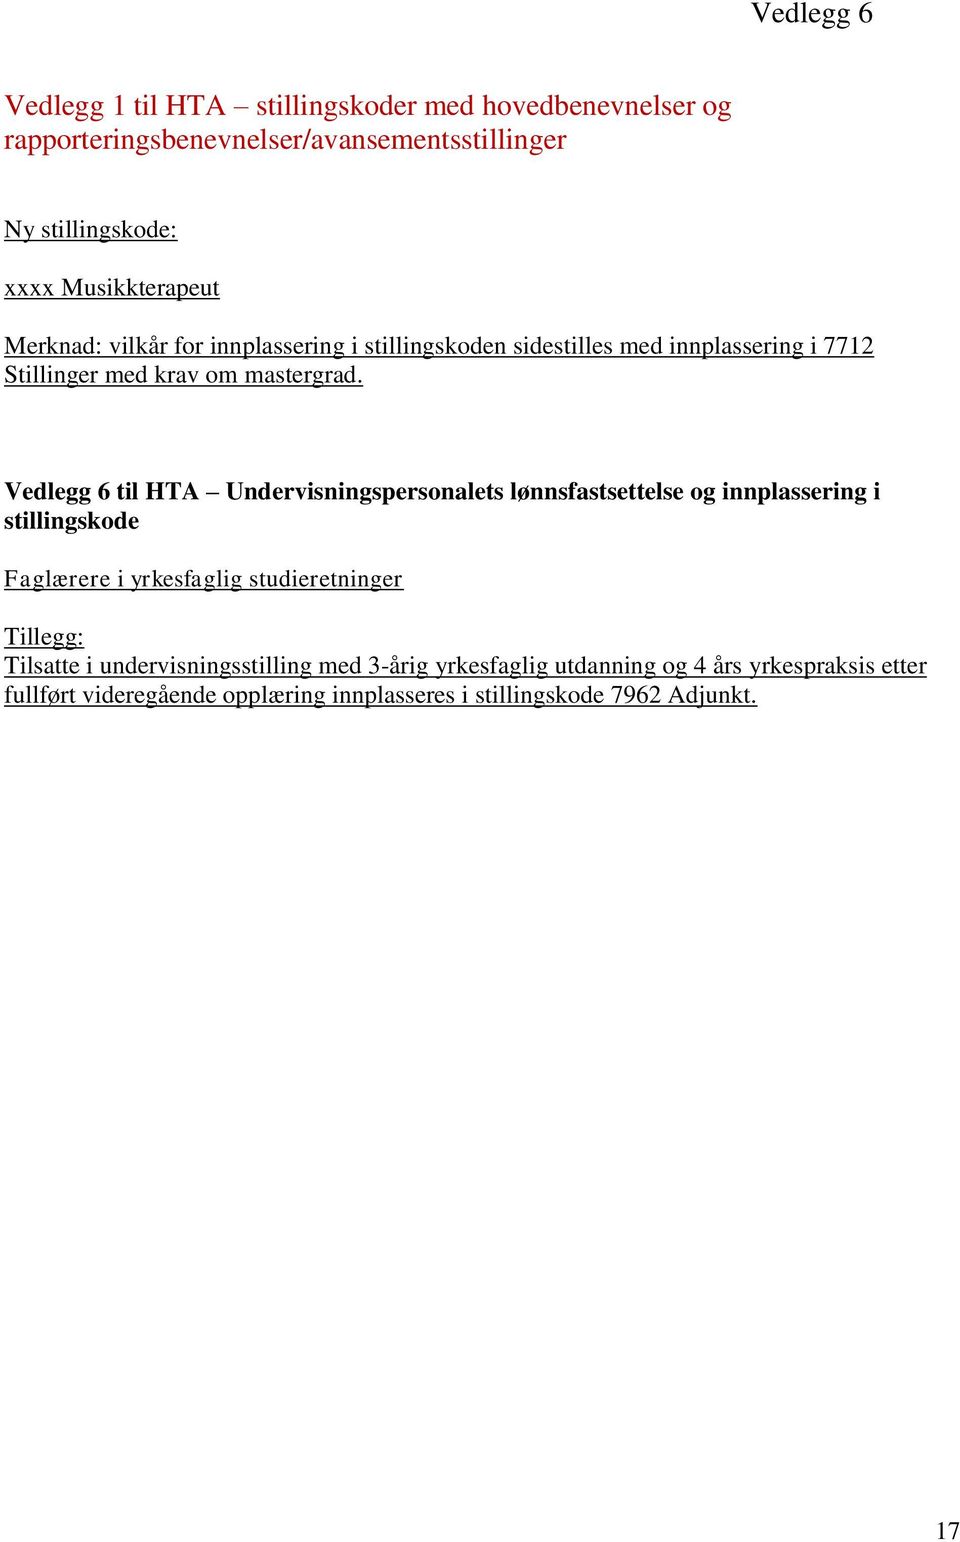 Vedlegg 6 til HTA Undervisningspersonalets lønnsfastsettelse og innplassering i stillingskode Faglærere i yrkesfaglig studieretninger Tillegg: